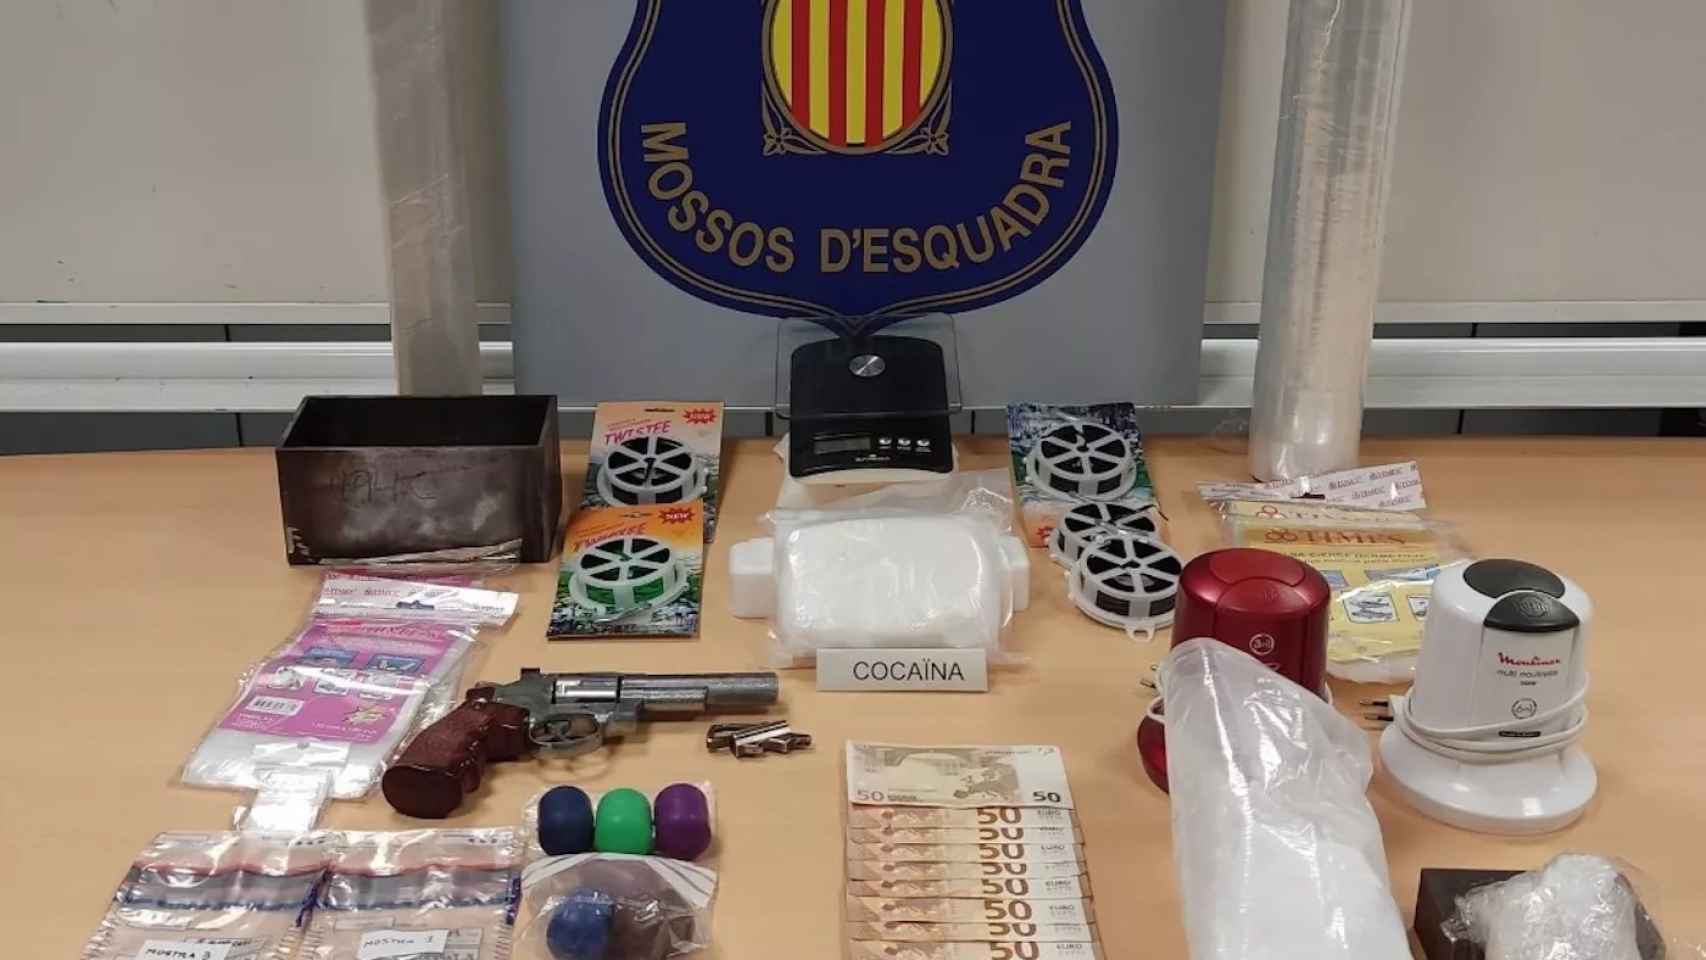 Detenido con medio kilo de cocaína en Esplugues de Llobregat / MOSSOS D'ESQUADRA